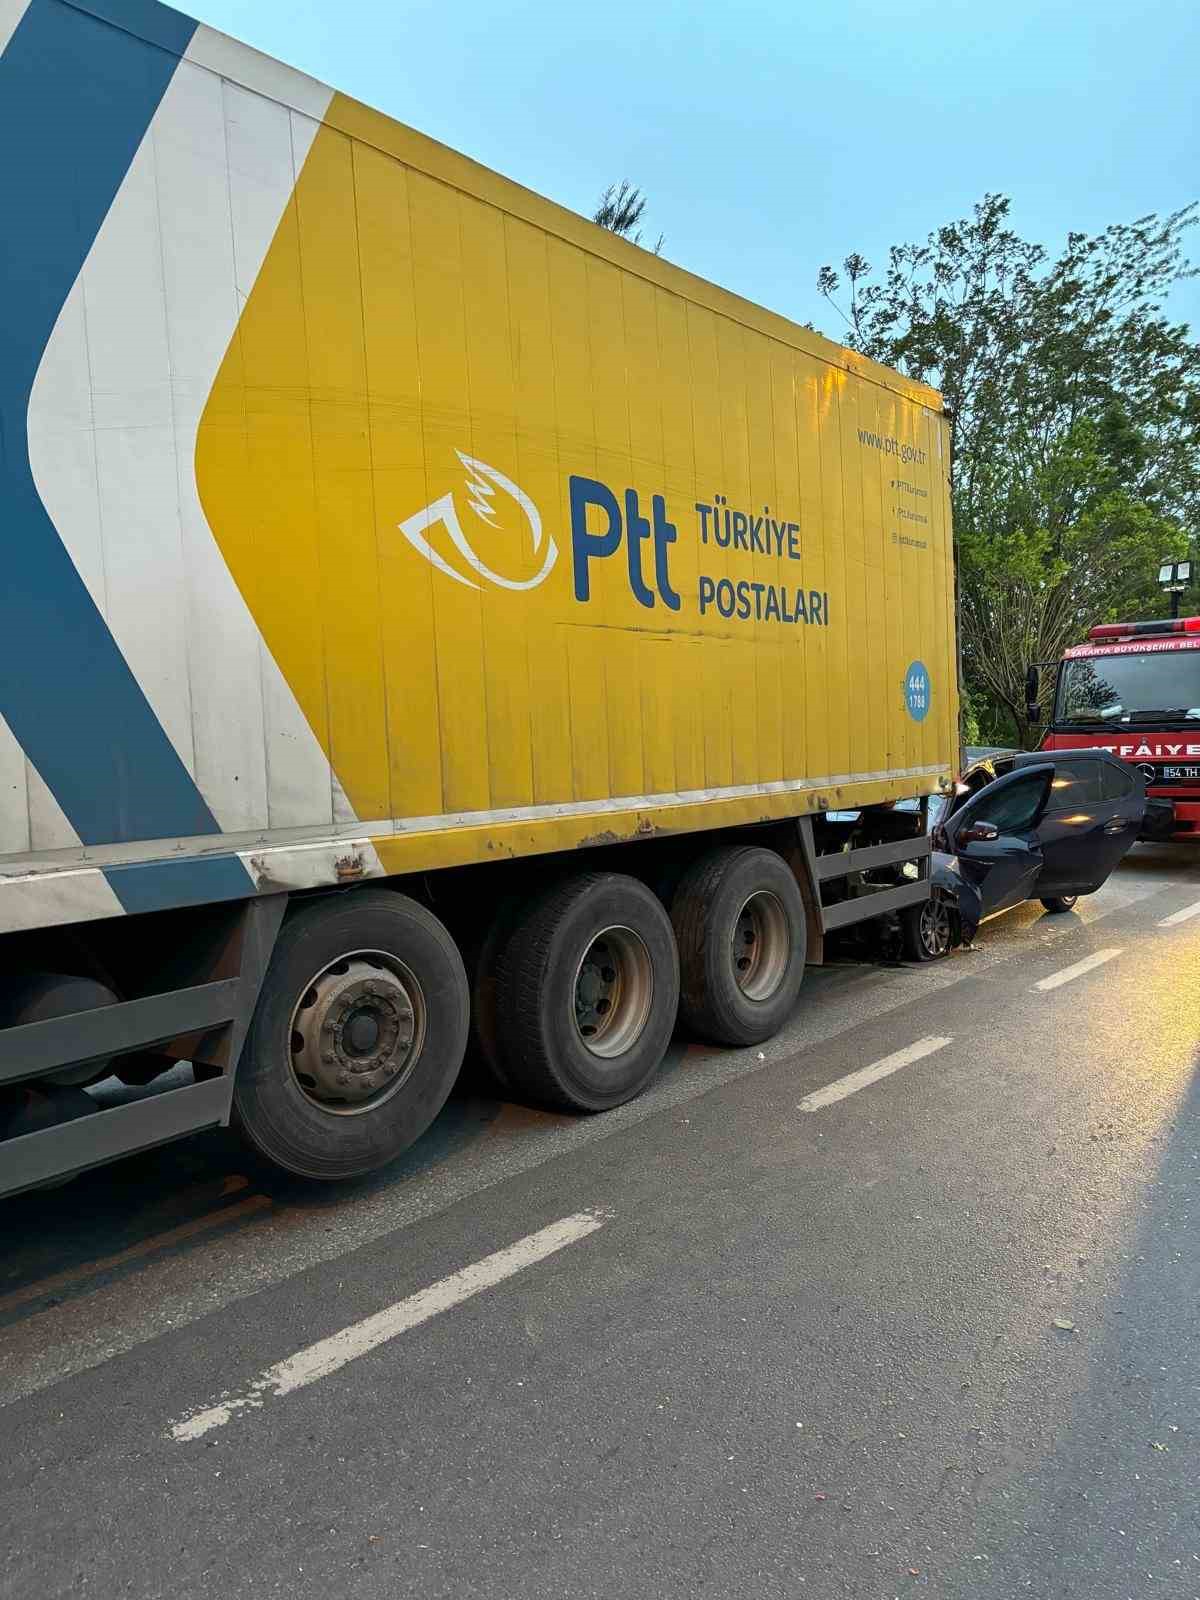 Otomobil, PTT kamyonuna ok gibi saplandı: 1 ölü, 2 yaralı
